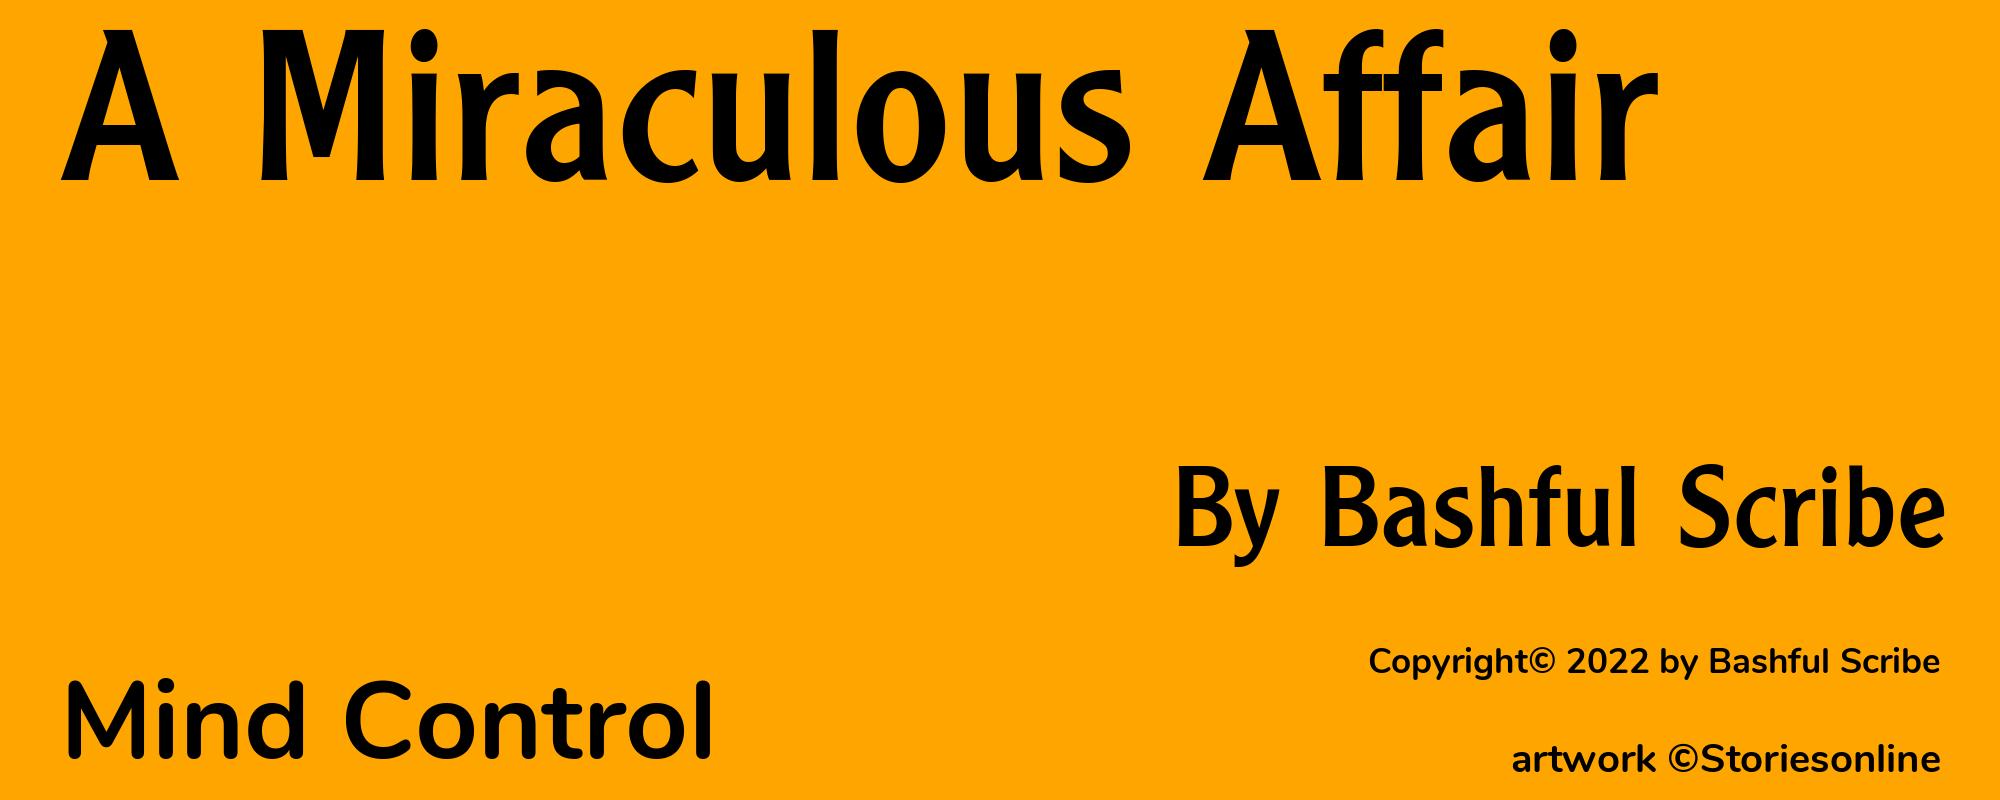 A Miraculous Affair - Cover